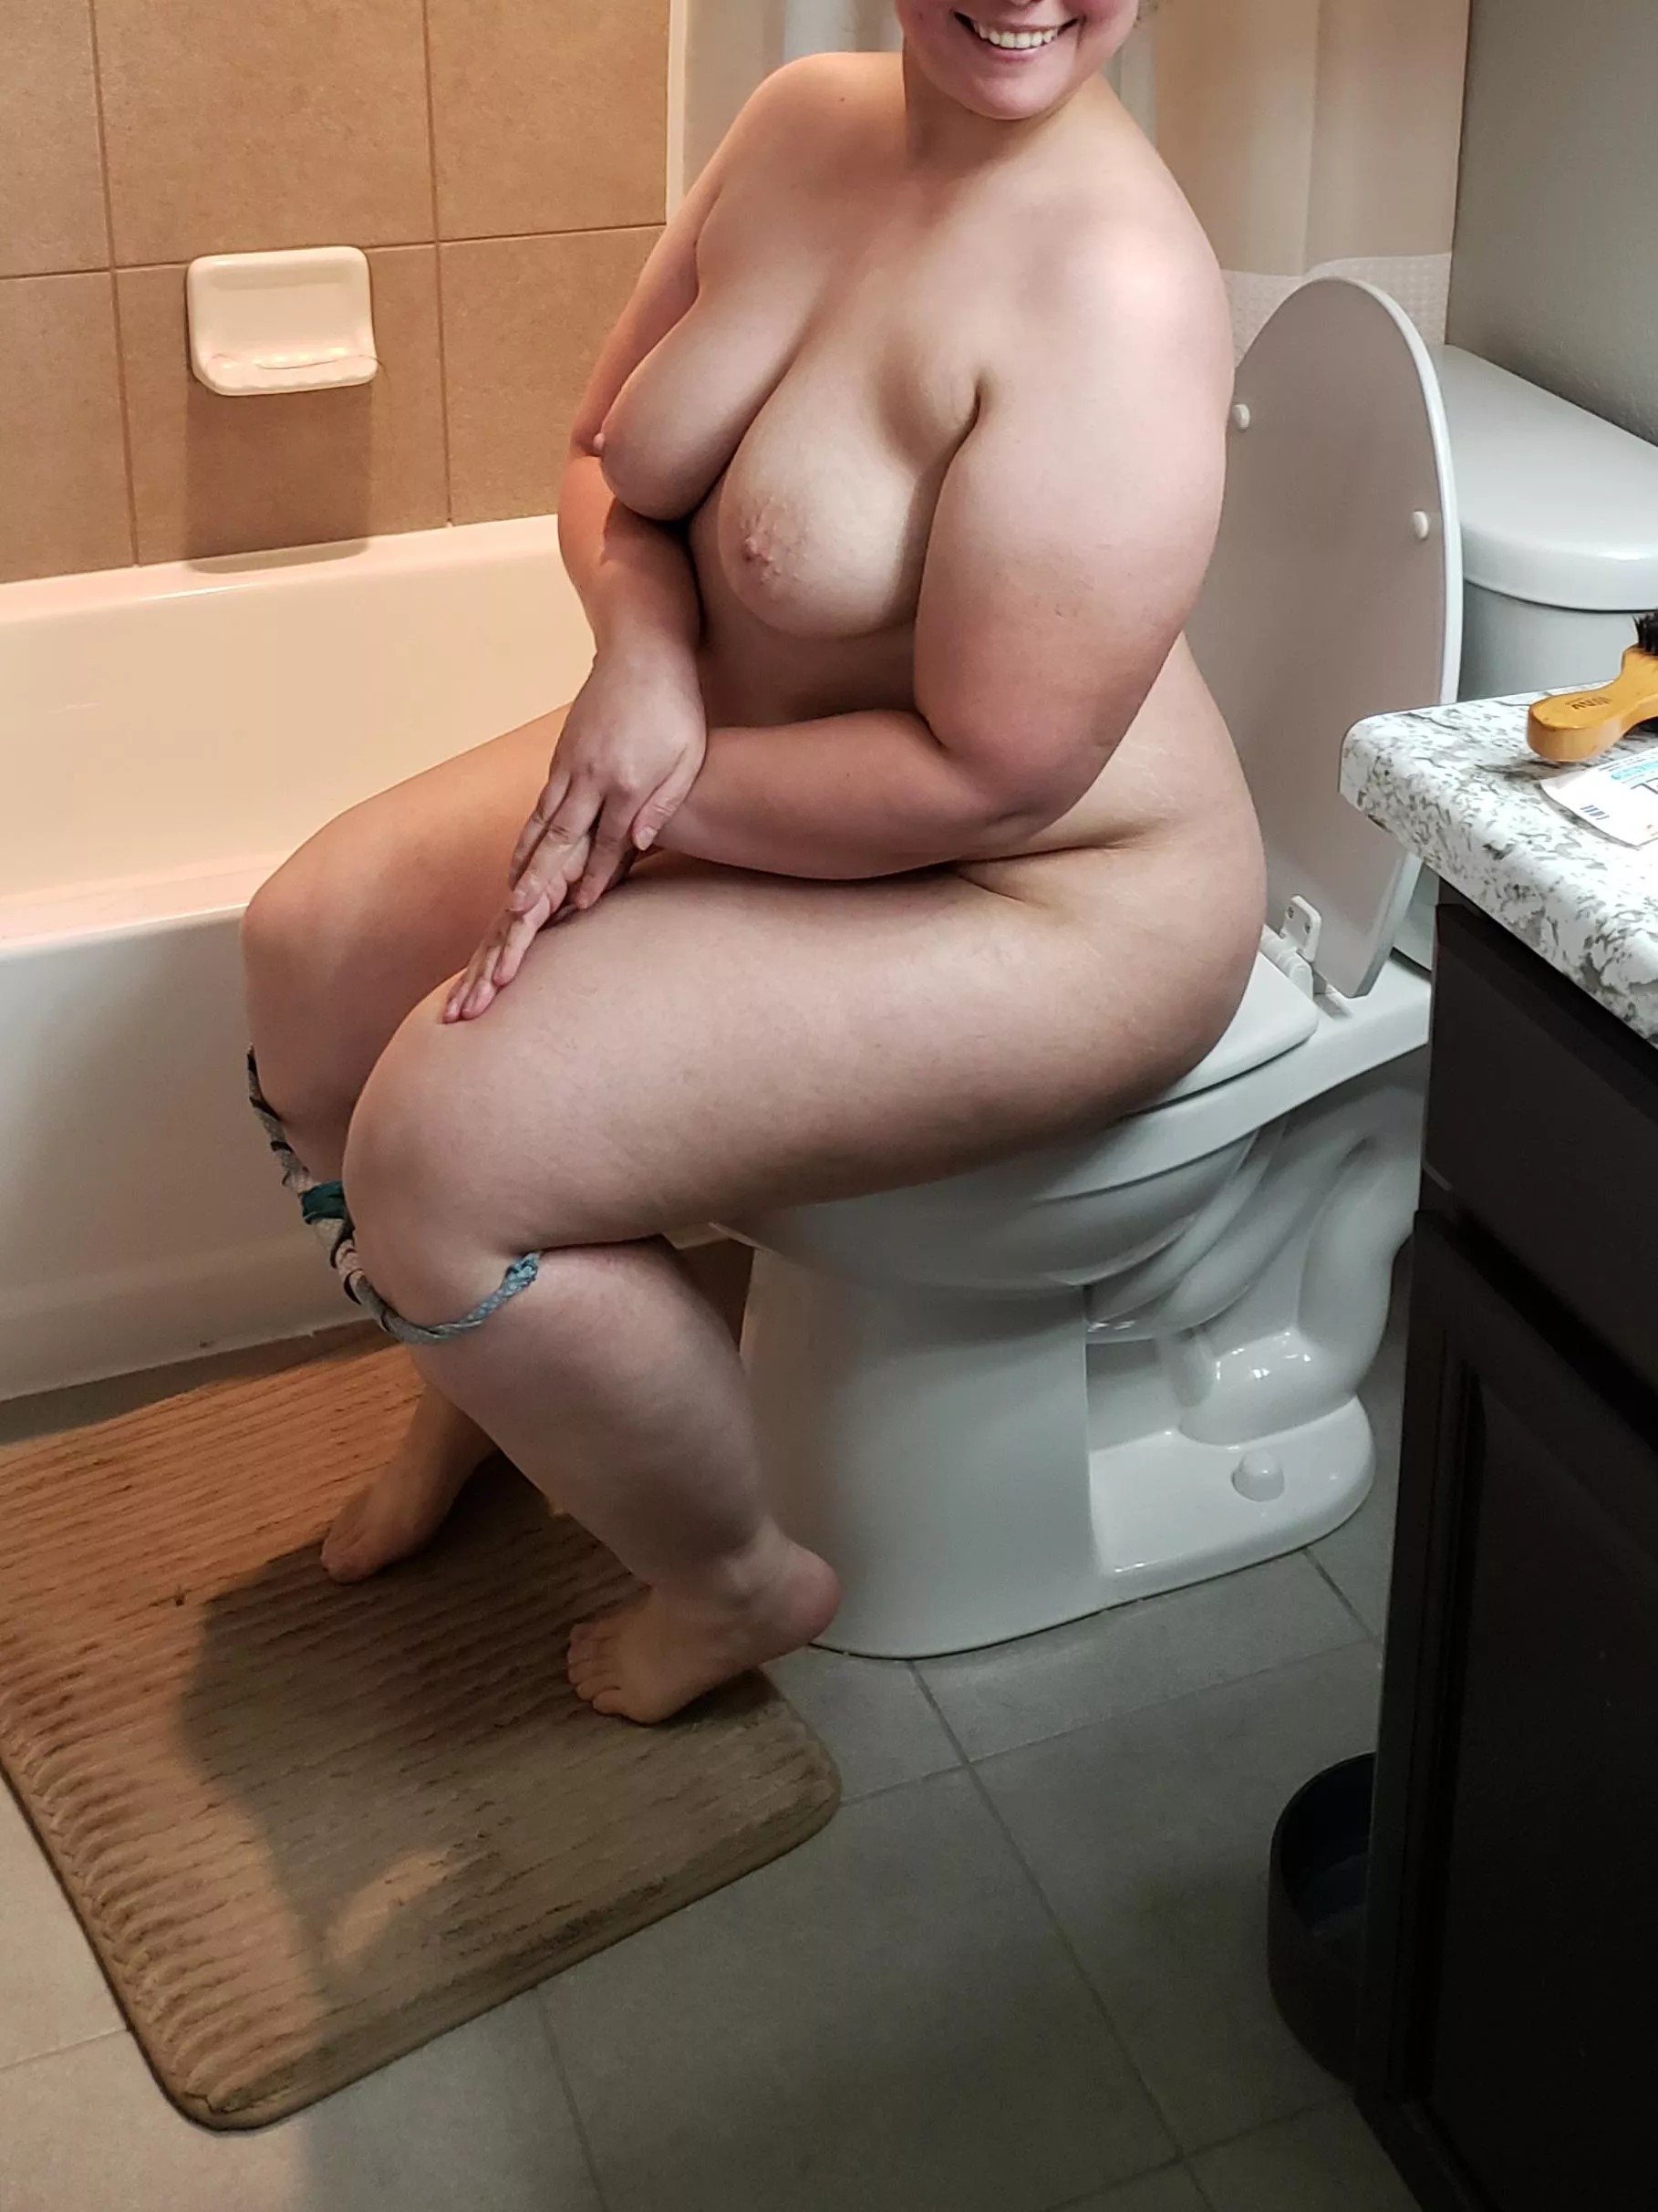 amateur nude sex photo postings Xxx Pics Hd